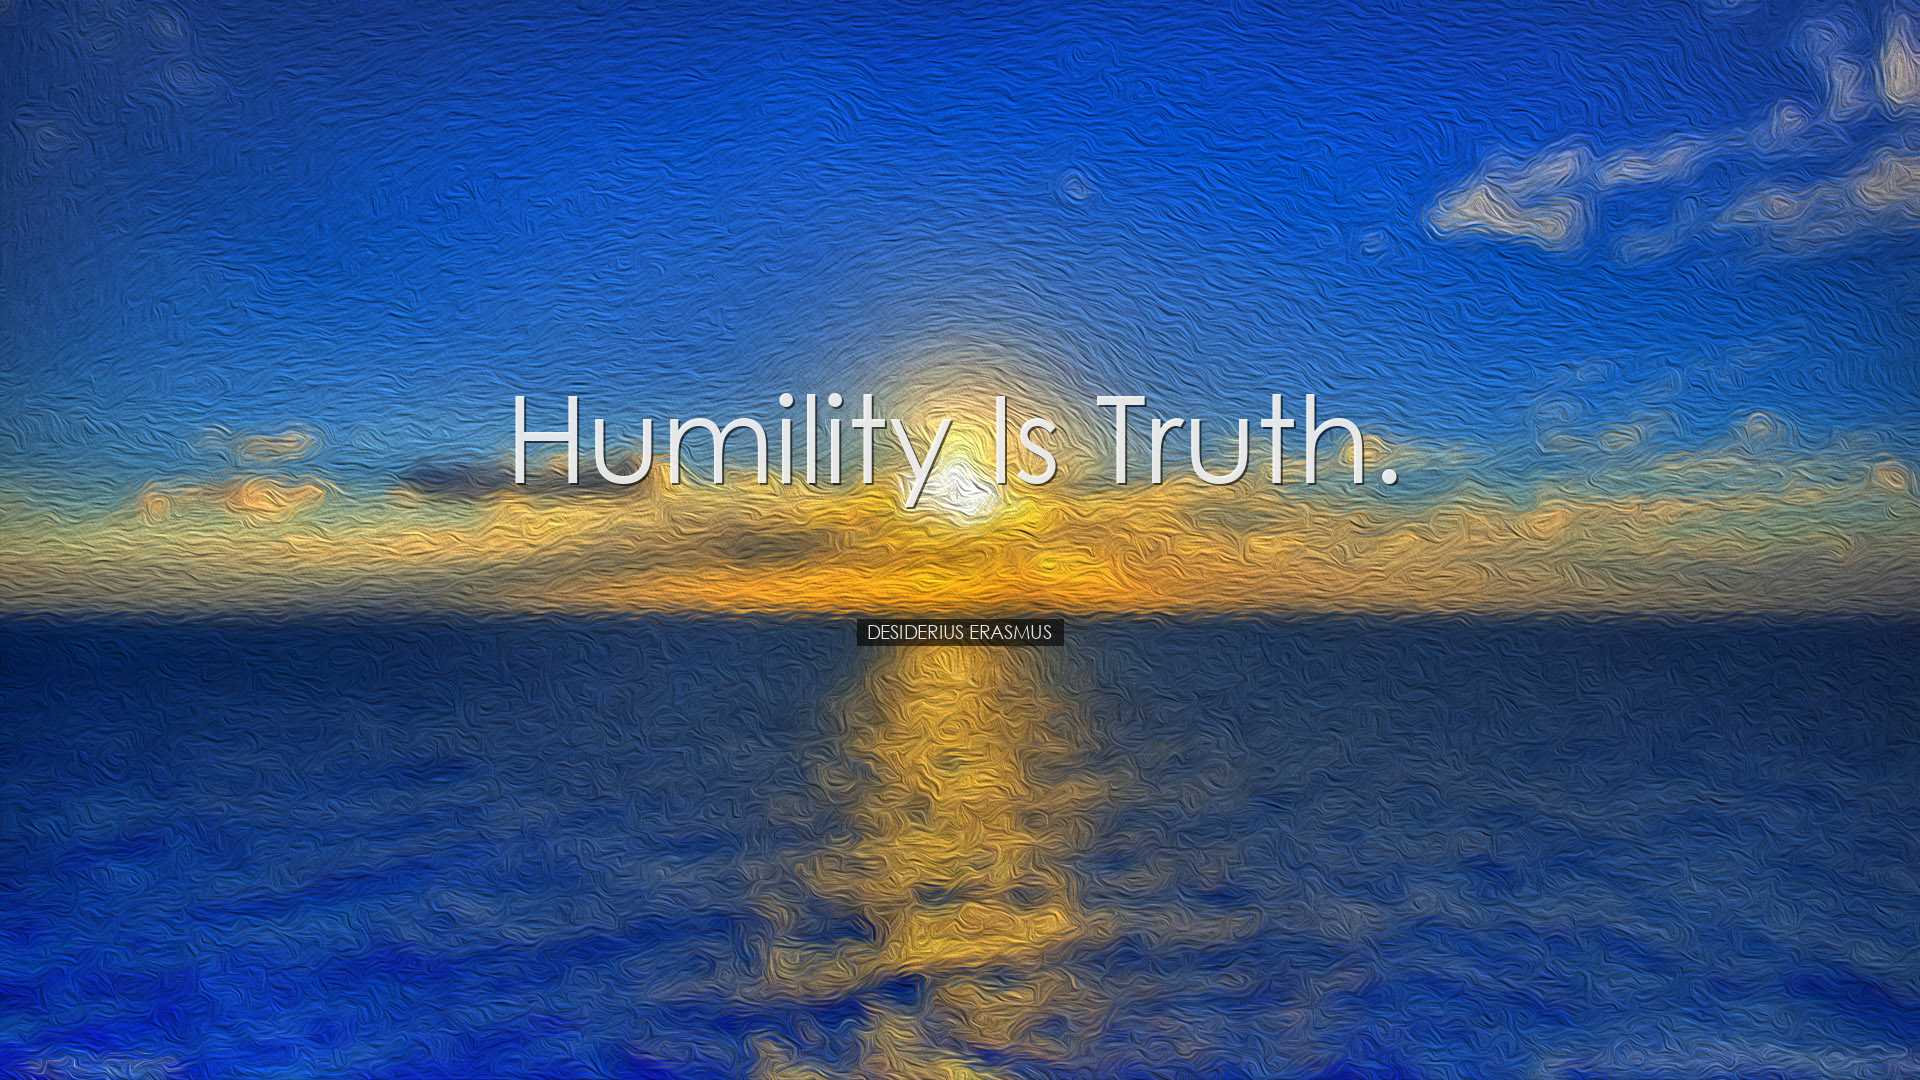 Humility is truth. - Desiderius Erasmus